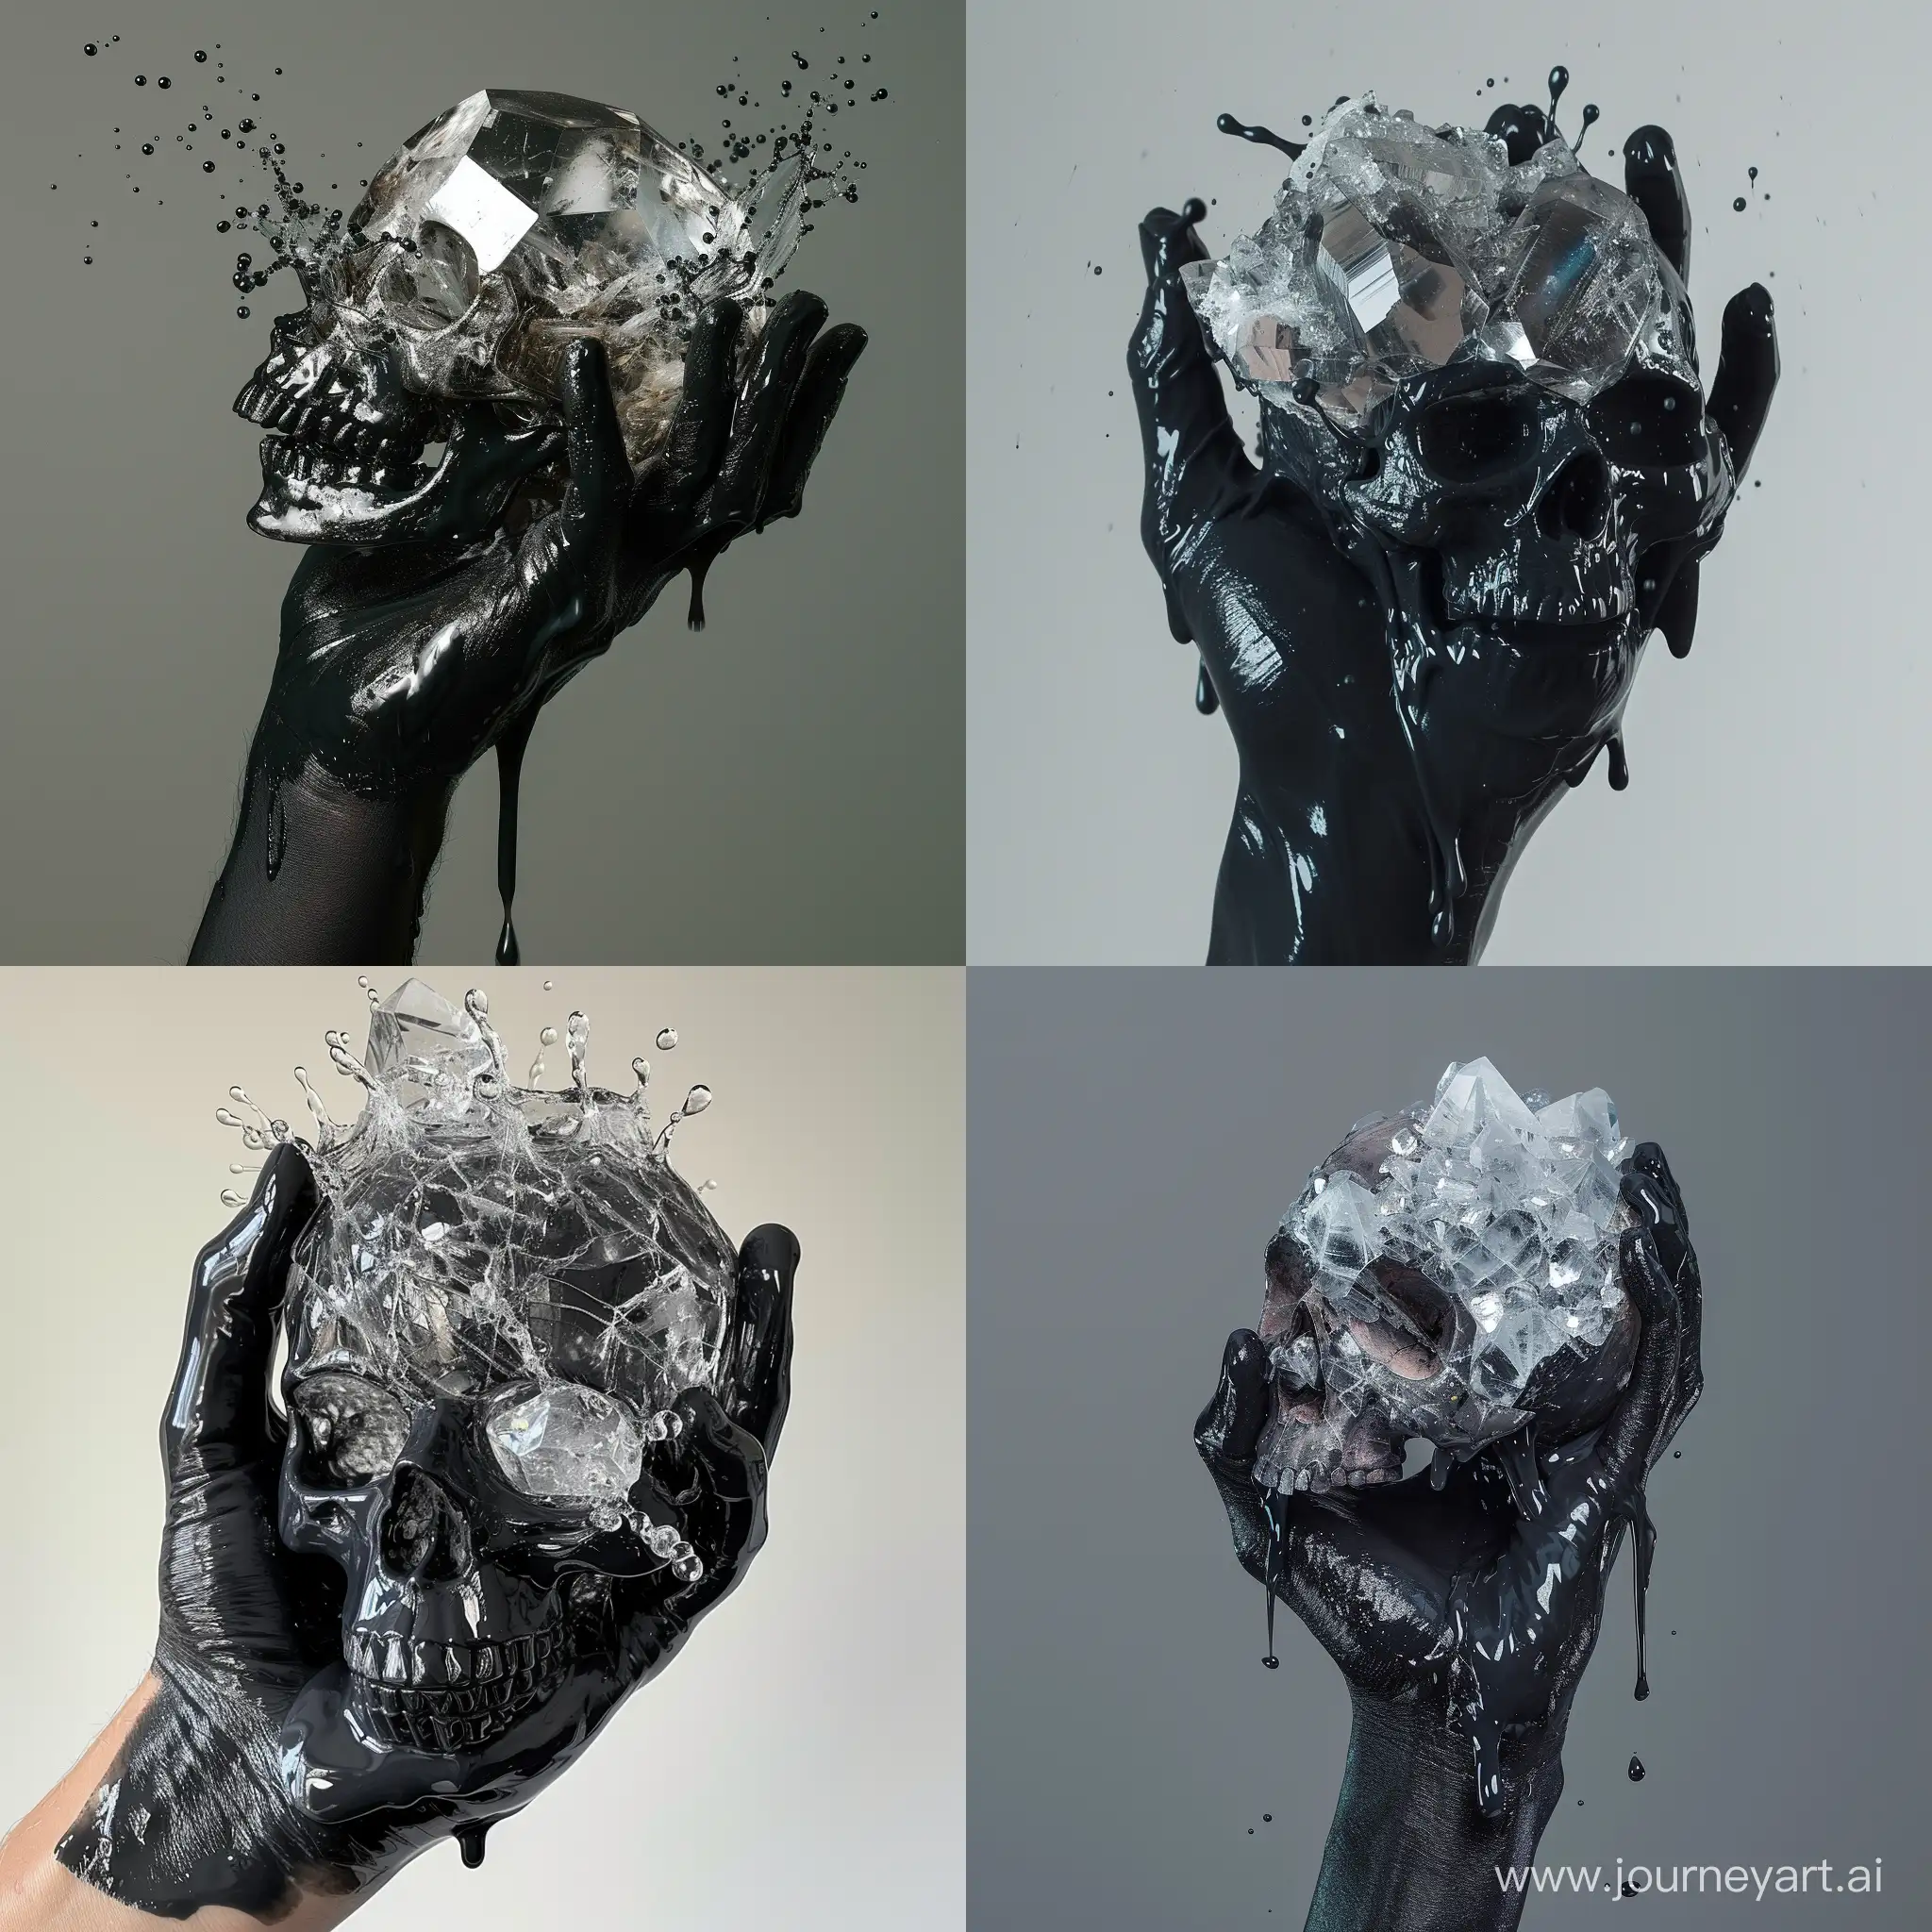 Eerie-Black-Hand-Grasping-Muddy-Crystal-Gem-Skull-with-Ominous-Slime-Splash